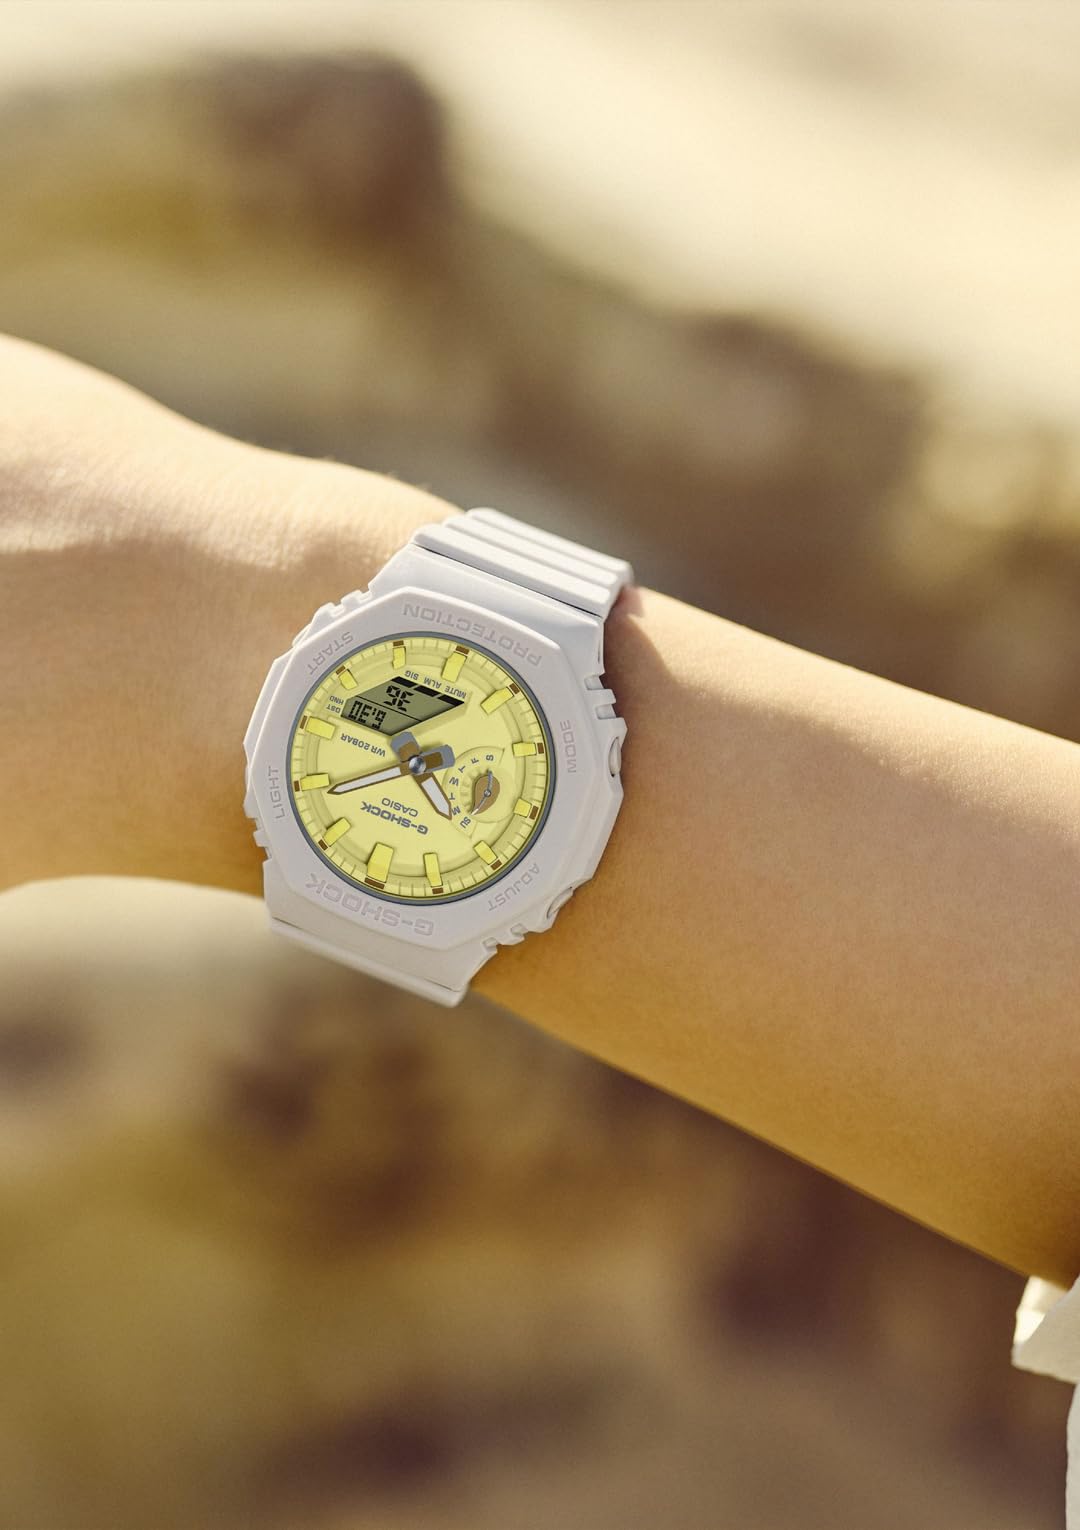 ジーショック [カシオ] 腕時計 【国内正規品】ミッドサイズモデル バイオマスプラスチック採用 GMA-S2100NC-4AJF レディース ベージュ×イエロー - BanzaiHobby